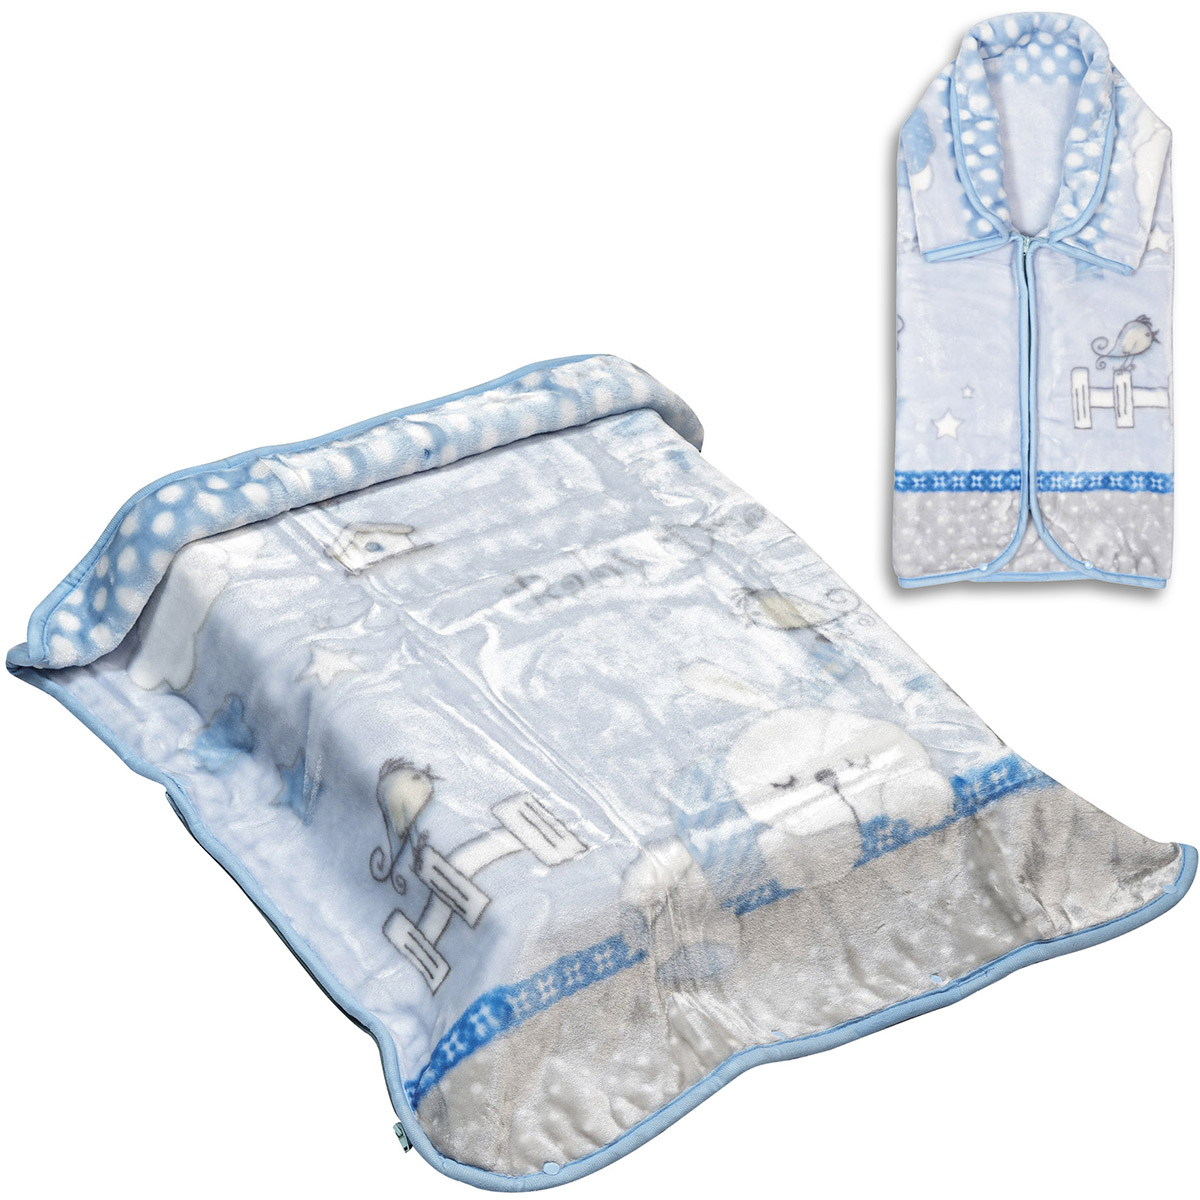 Κουβέρτα βρεφική - Υπνόσακος Art 5251 80x90 Μπλε  